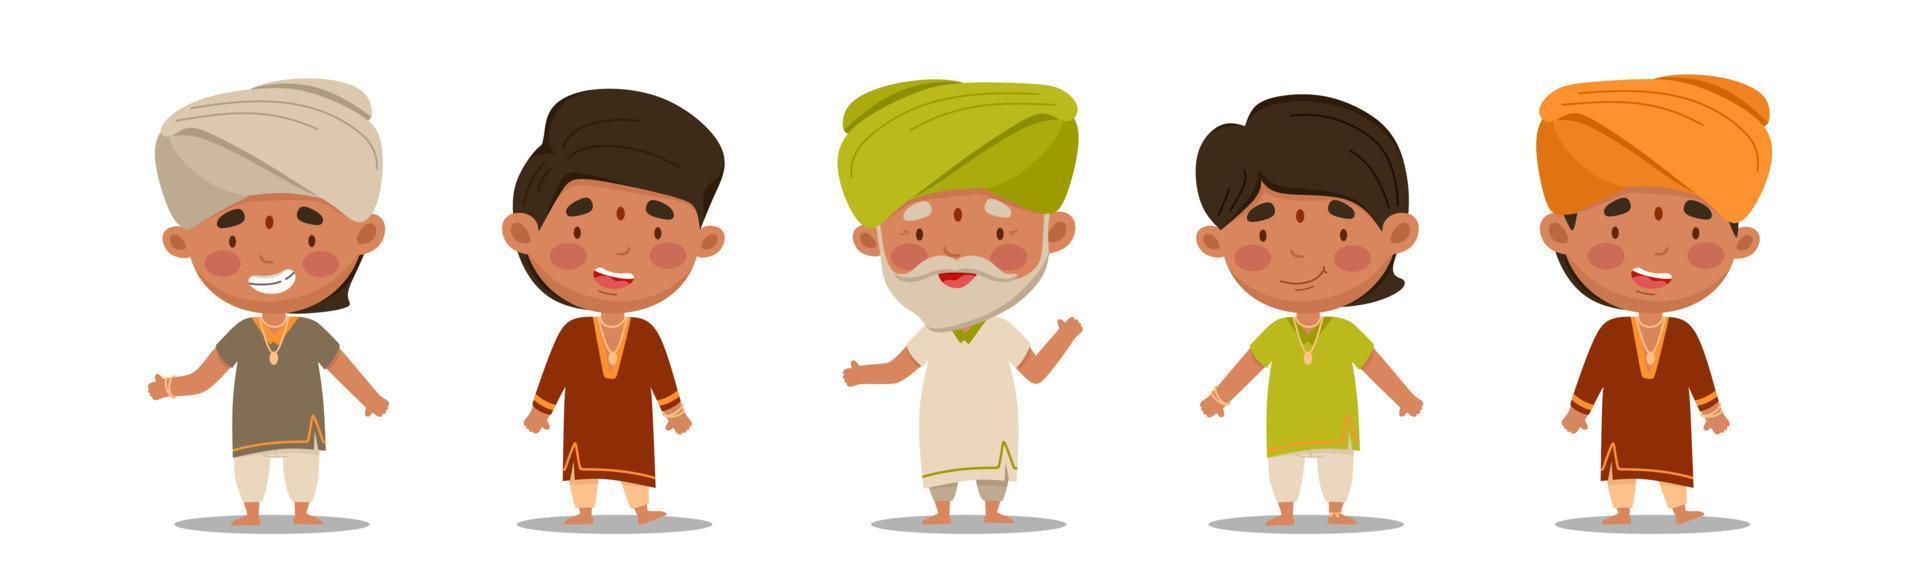 homens indianos são um conjunto fofo e divertido. ilustração vetorial em um estilo cartoon plana vetor